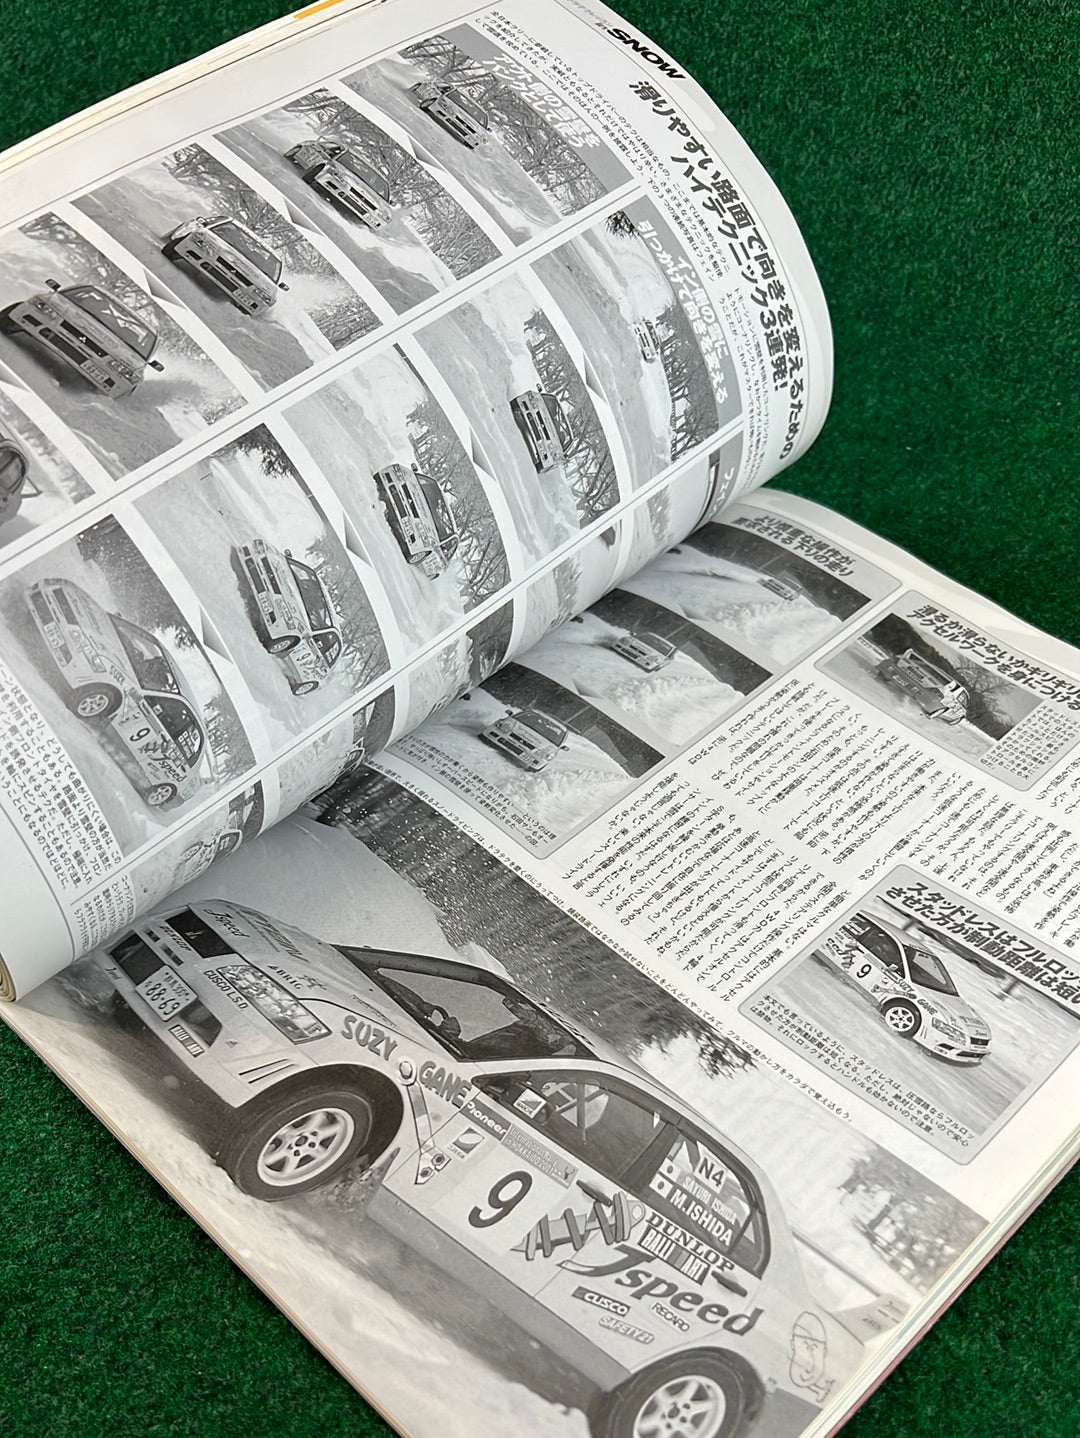 Hyper Rev Magazine - Mitsubishi Lancer Evolution - No. 4 Vol. 81